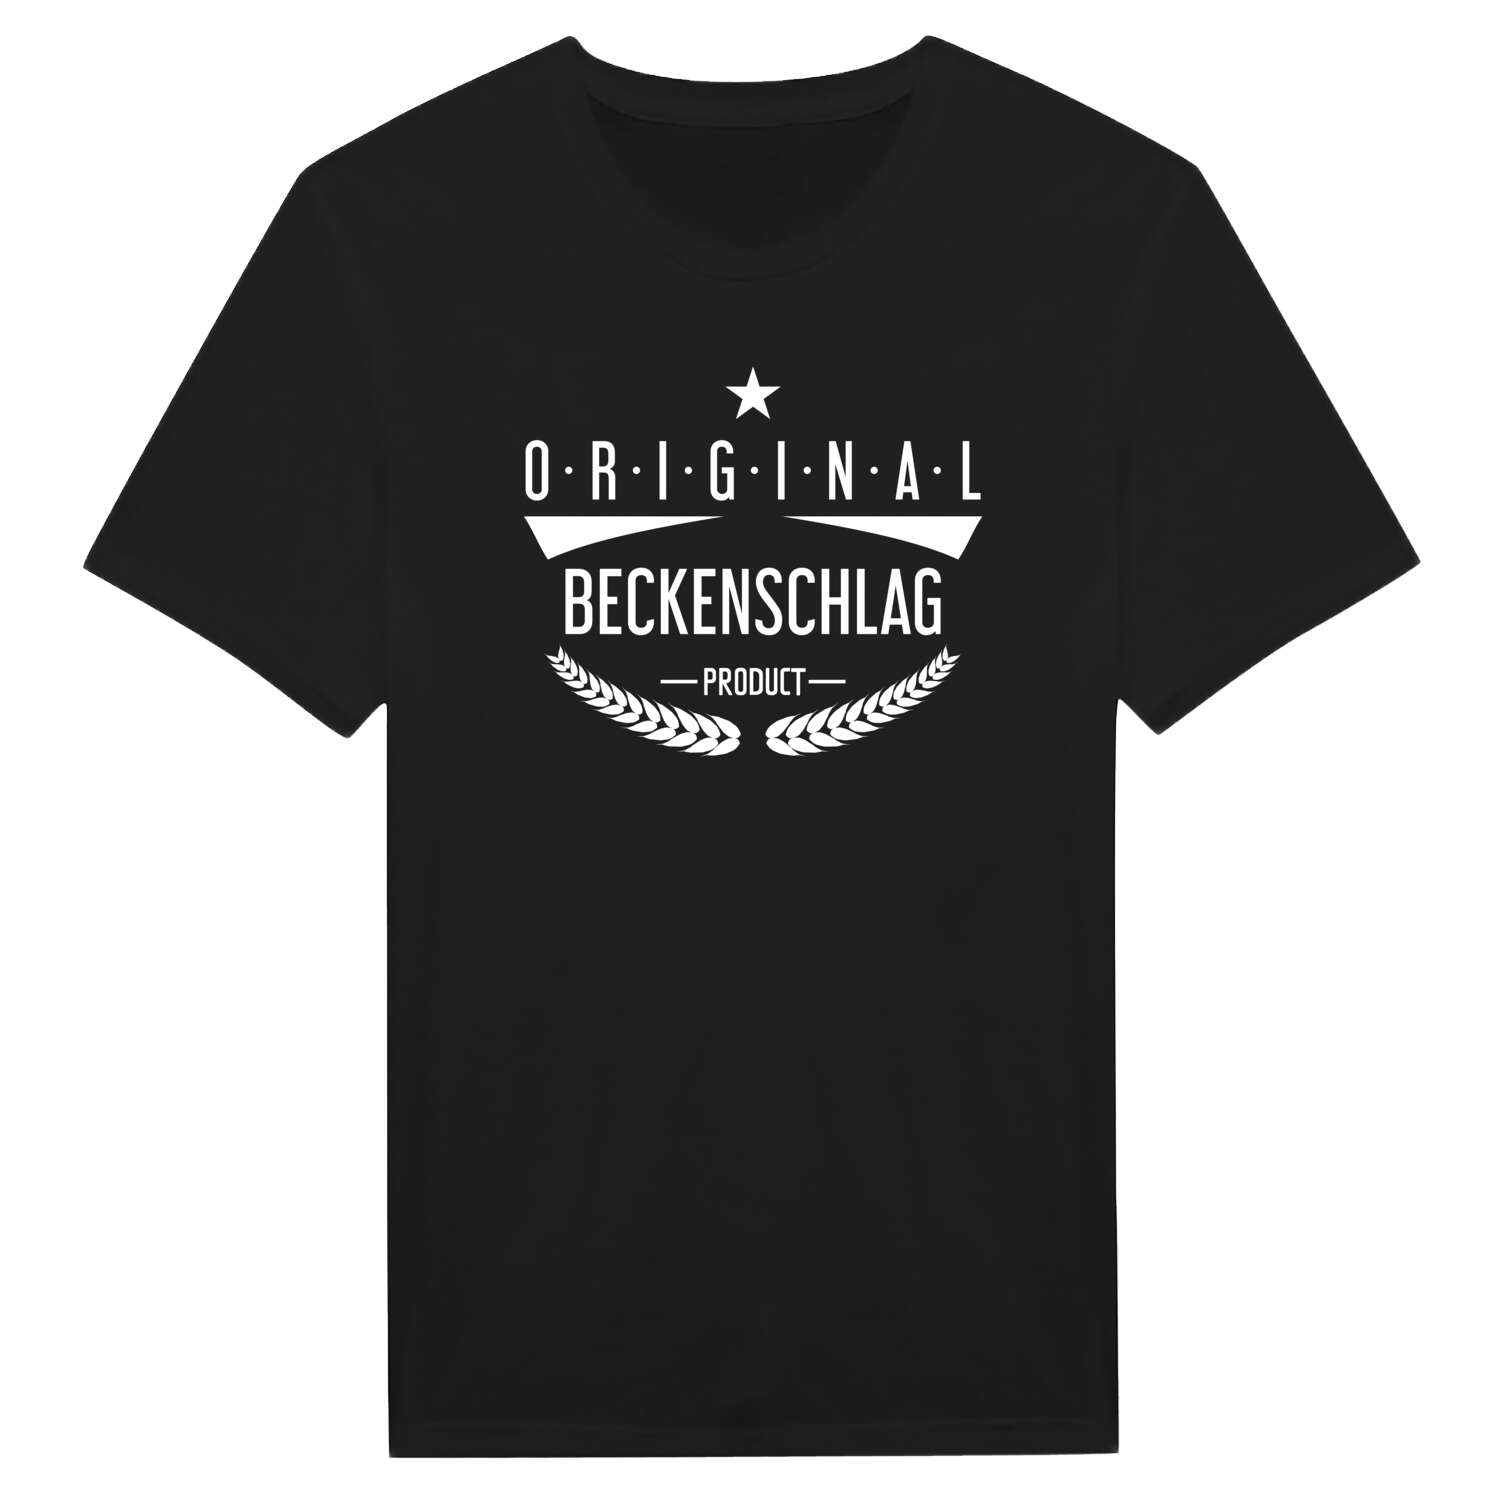 Beckenschlag T-Shirt »Original Product«